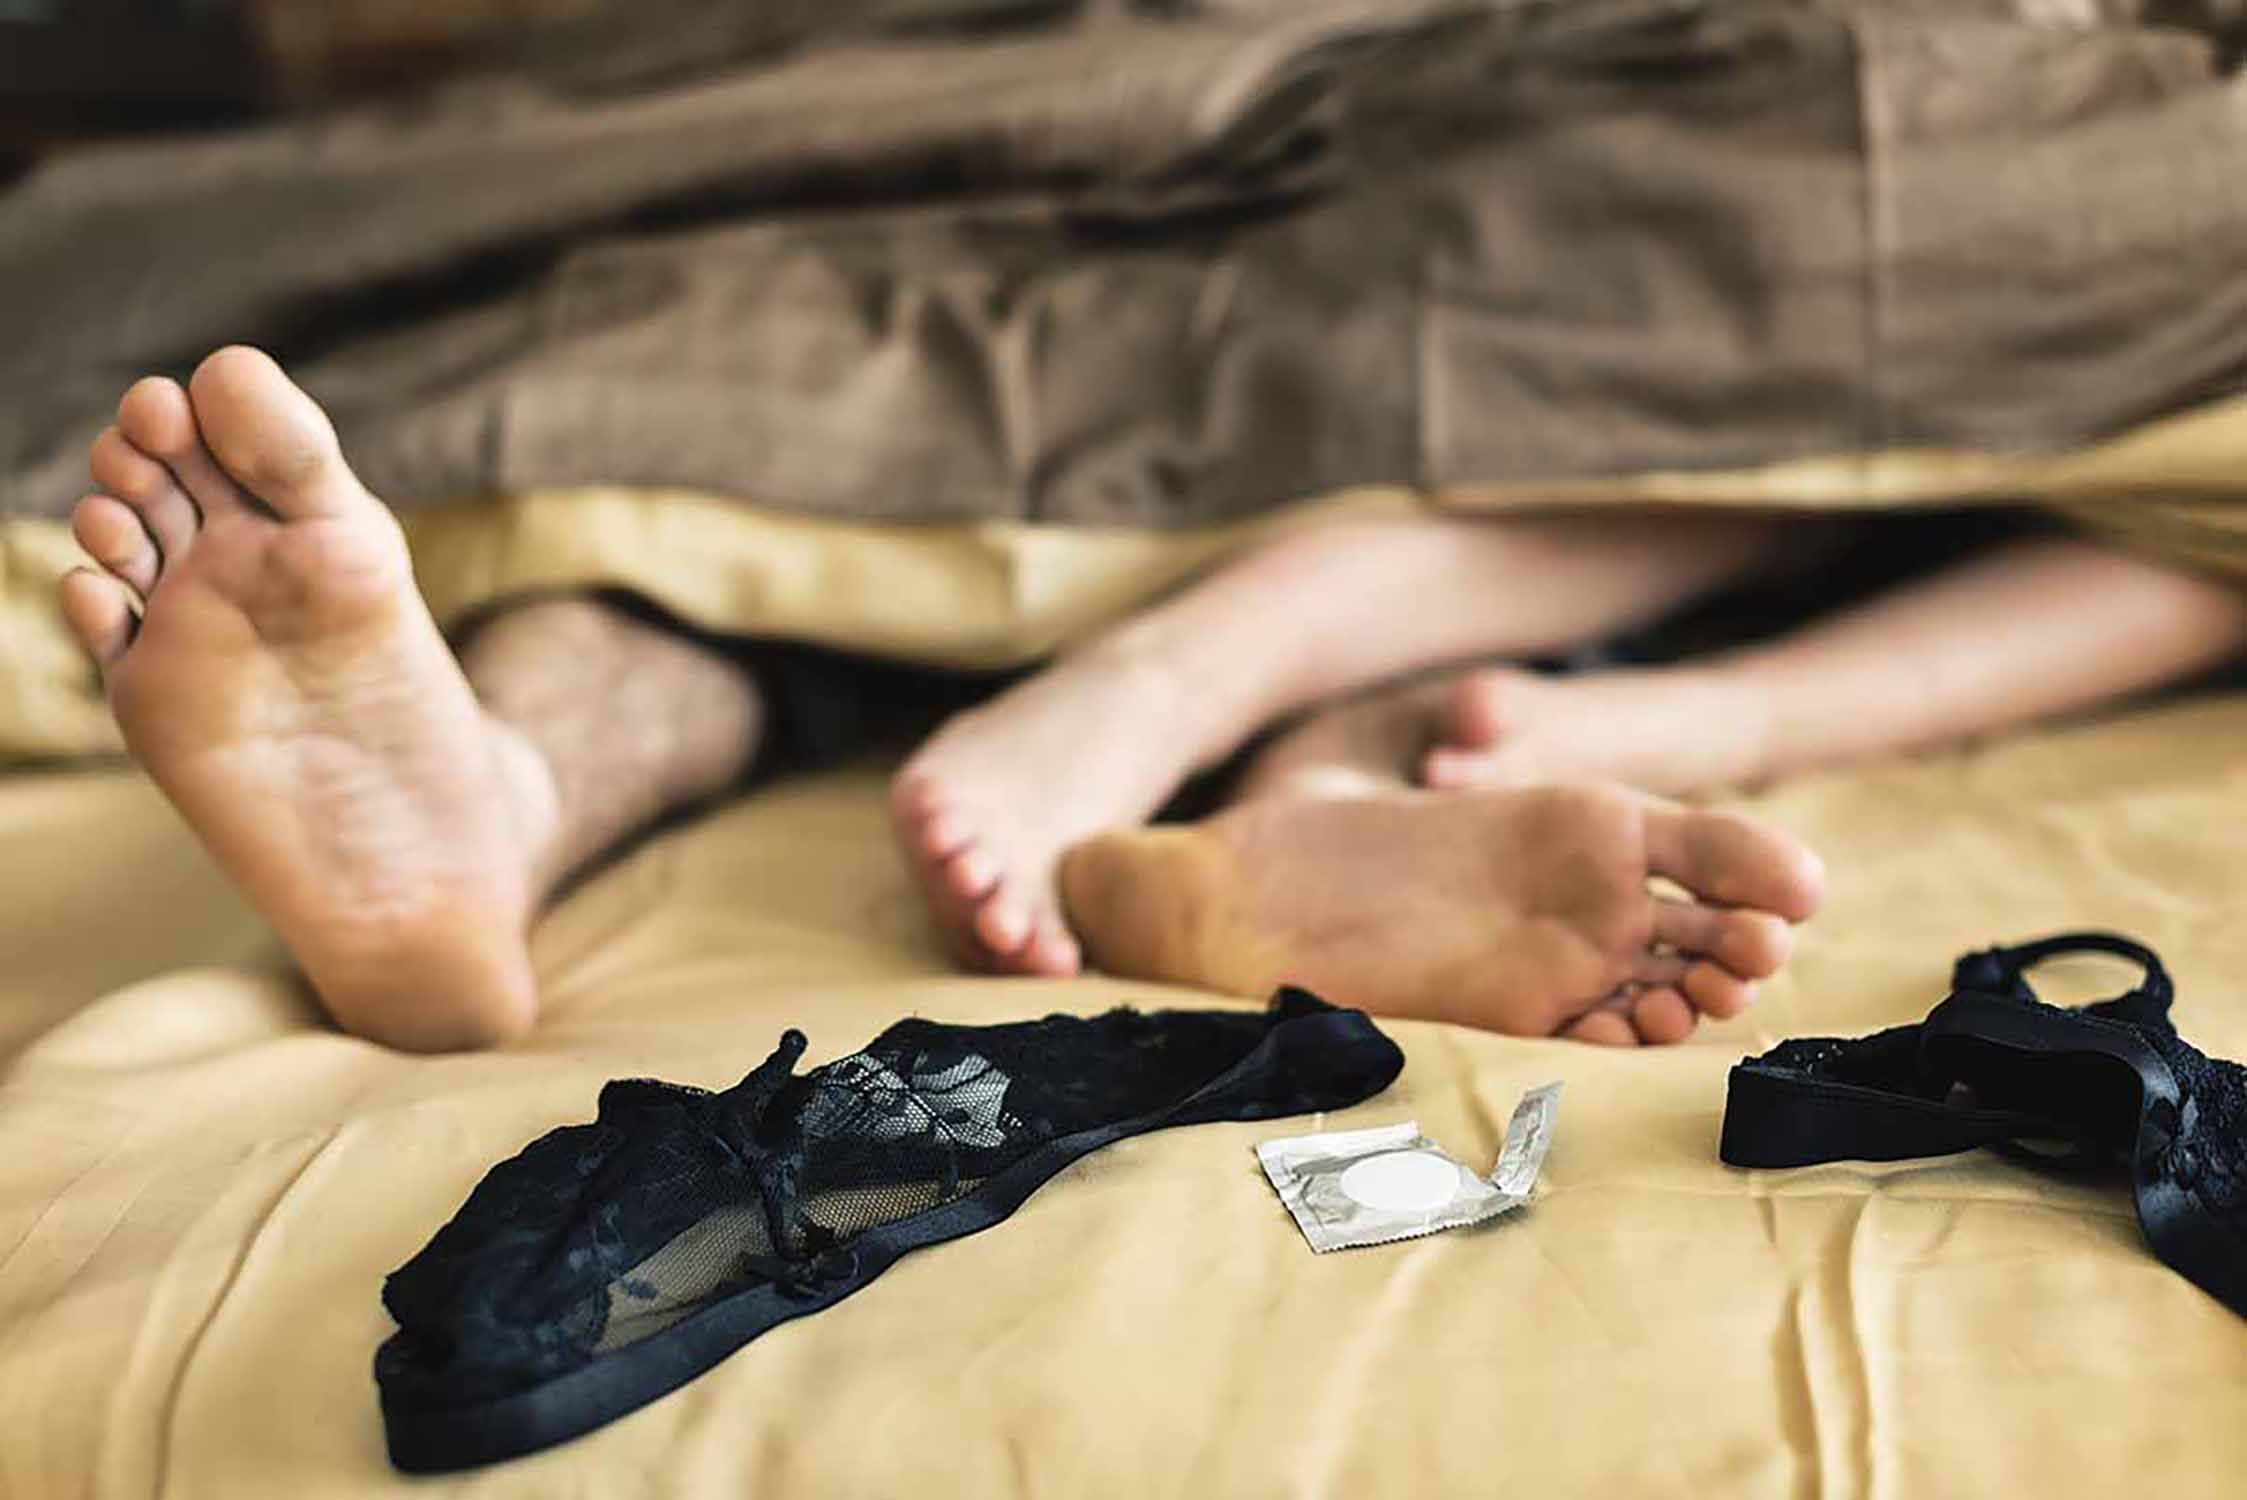 El sexe ajuda a dormir millor